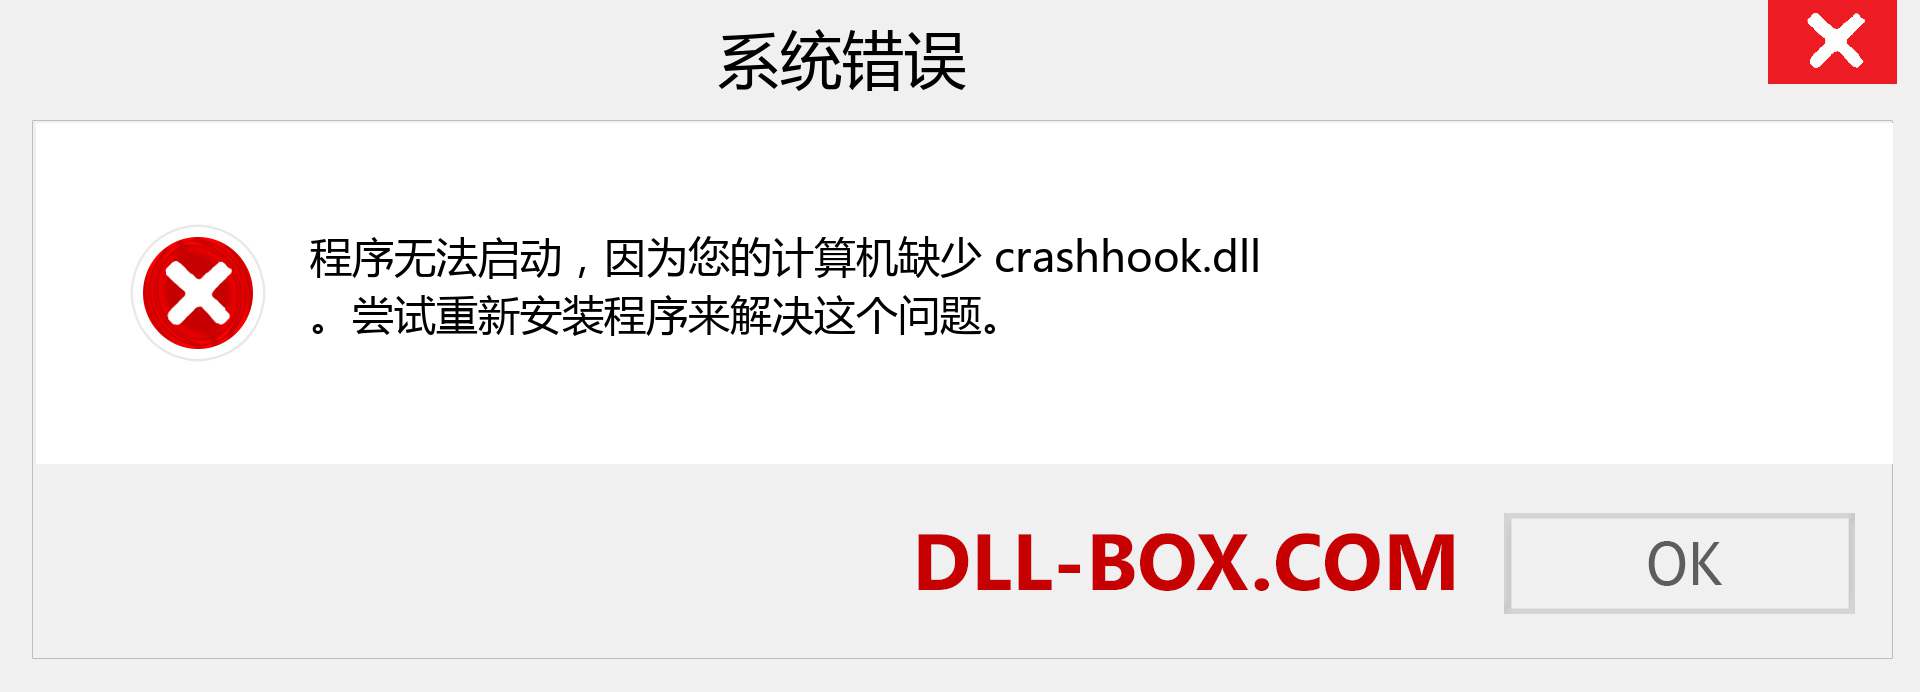 crashhook.dll 文件丢失？。 适用于 Windows 7、8、10 的下载 - 修复 Windows、照片、图像上的 crashhook dll 丢失错误